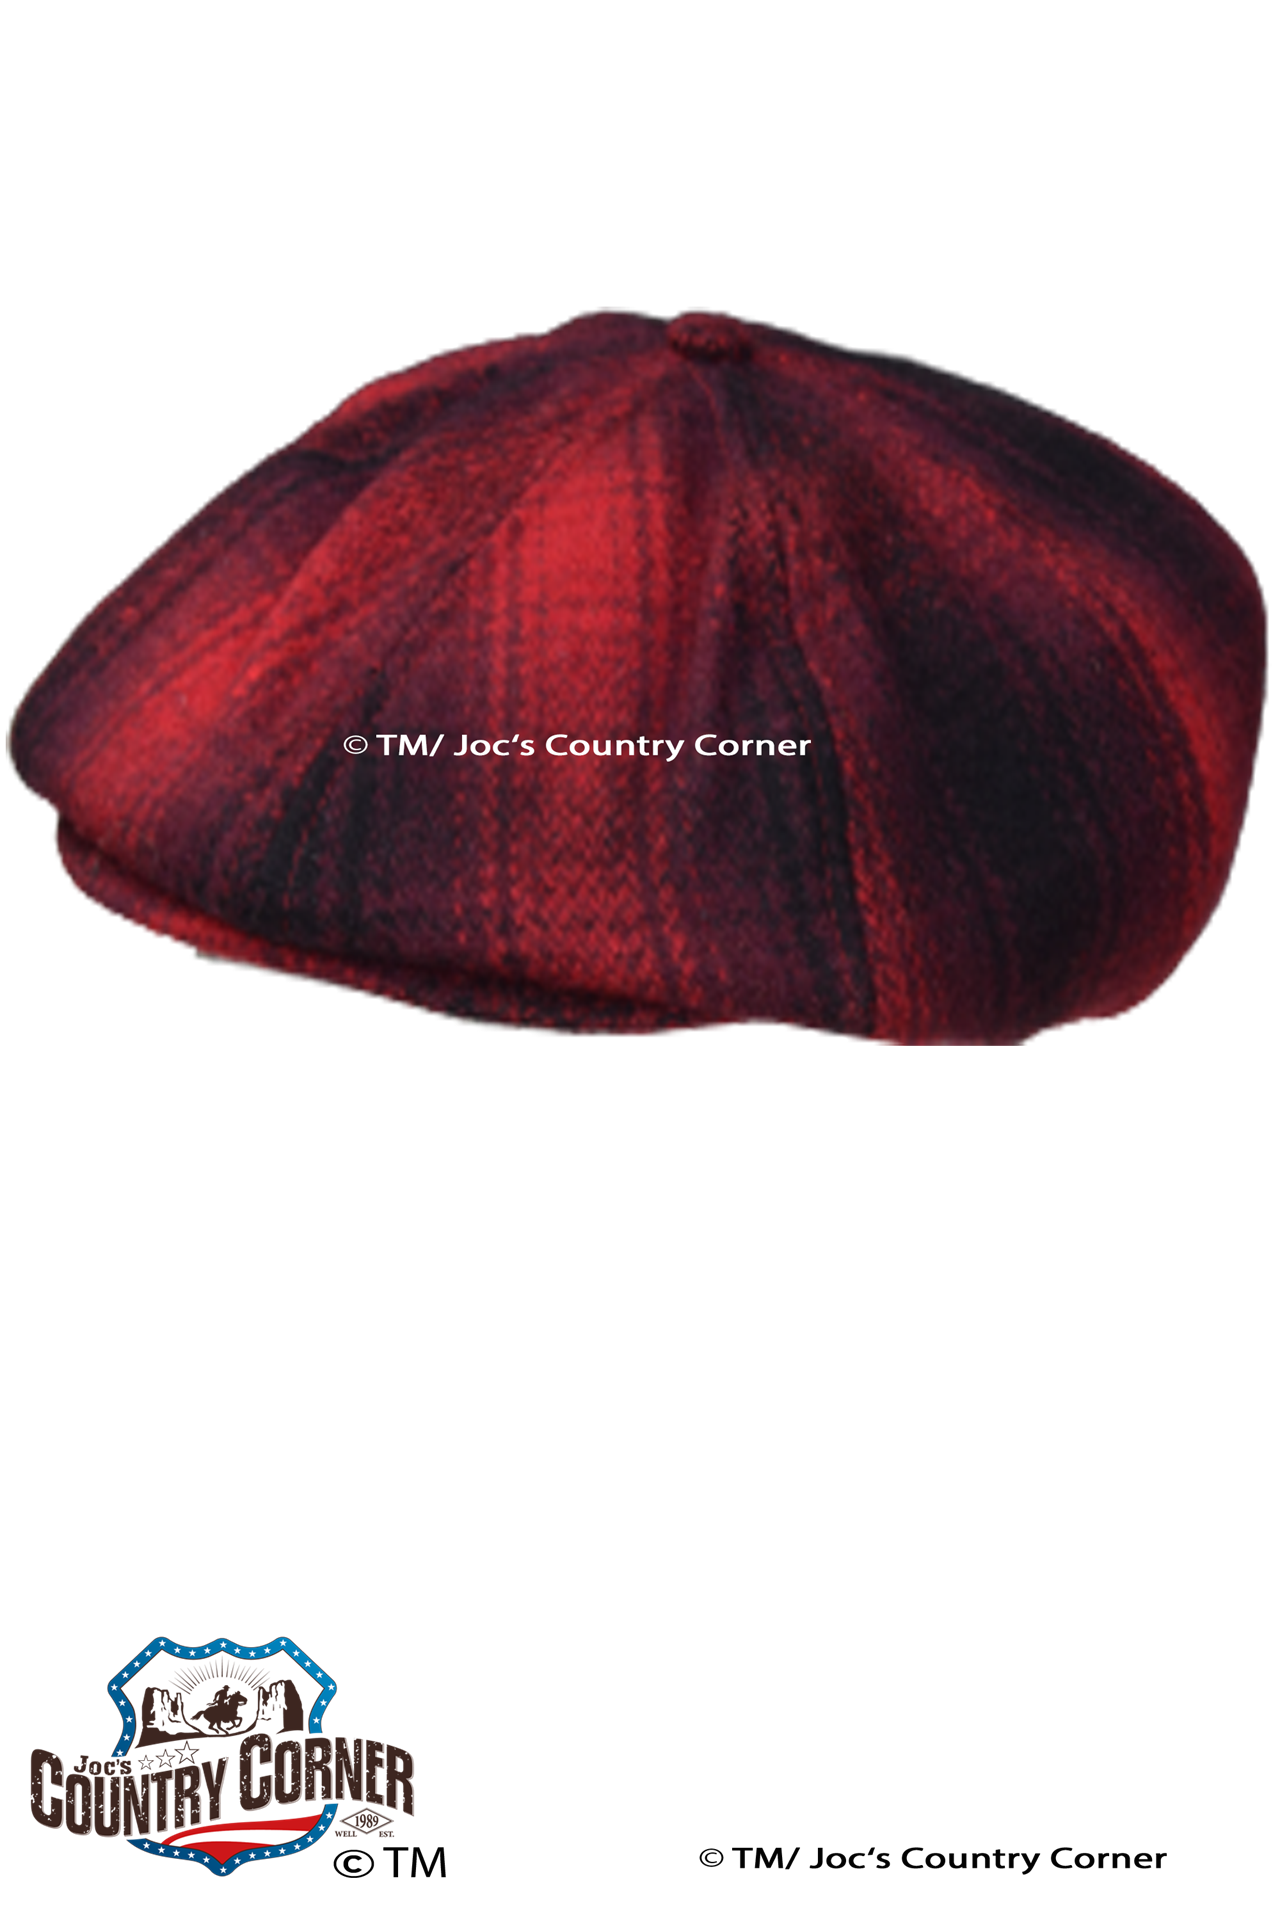 Joc's Country Corner Produkt-Beispiele VINTAGE – RETRO SLUGGER CAP “ROT SCHWARZ KARO”